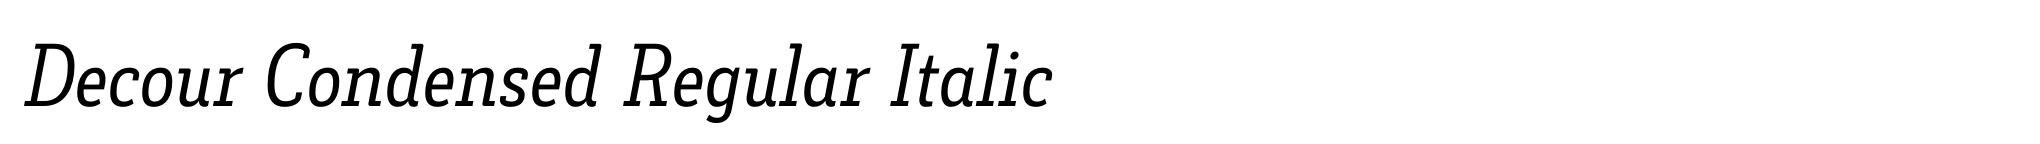 Decour Condensed Regular Italic image